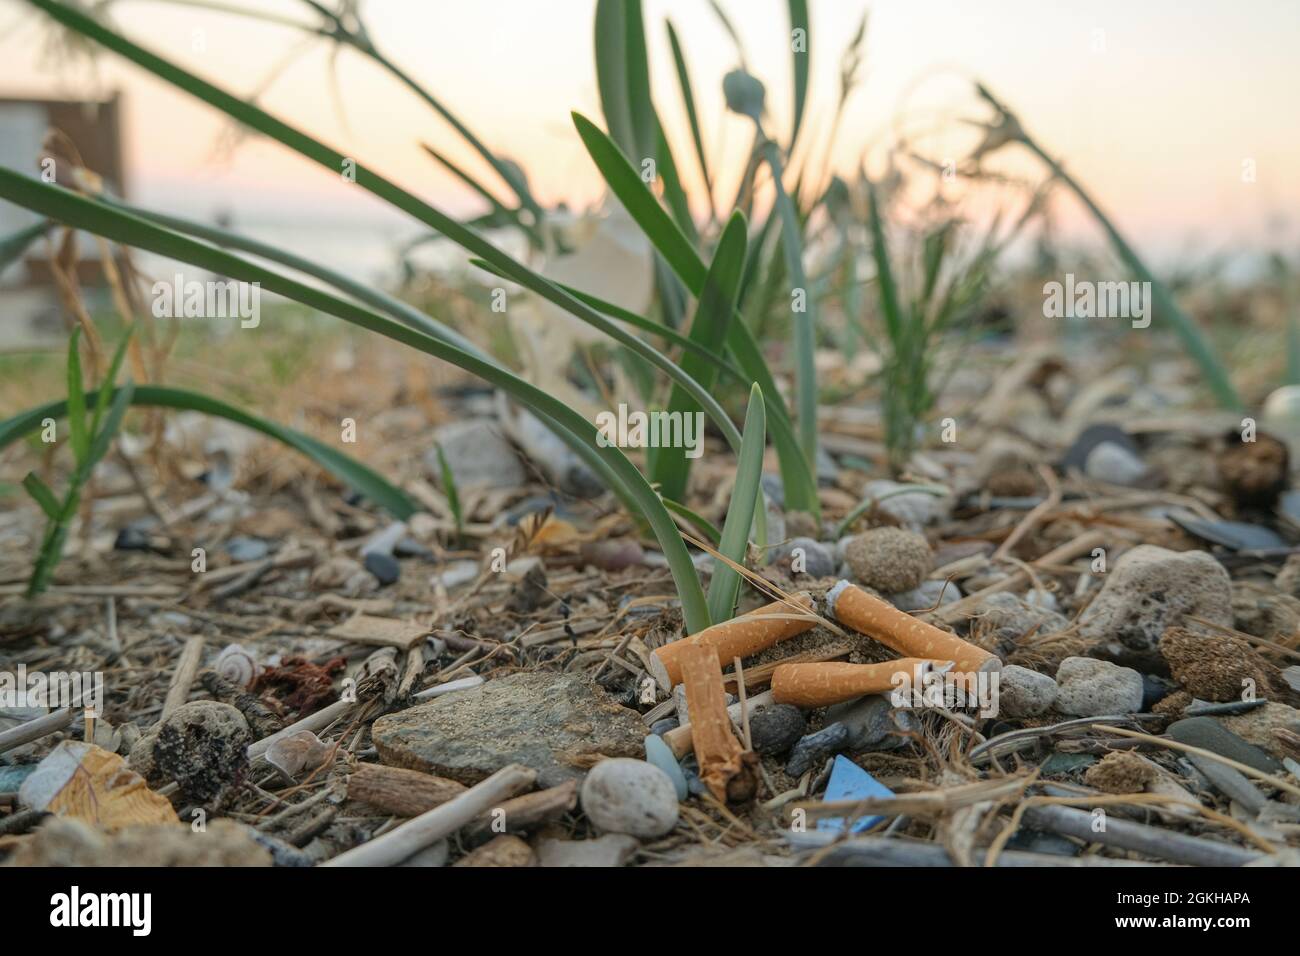 Mozziconi di sigaretta sporchi scartati sulla spiaggia di mare, ecosistema habitat inquinamento rifiuti Foto Stock